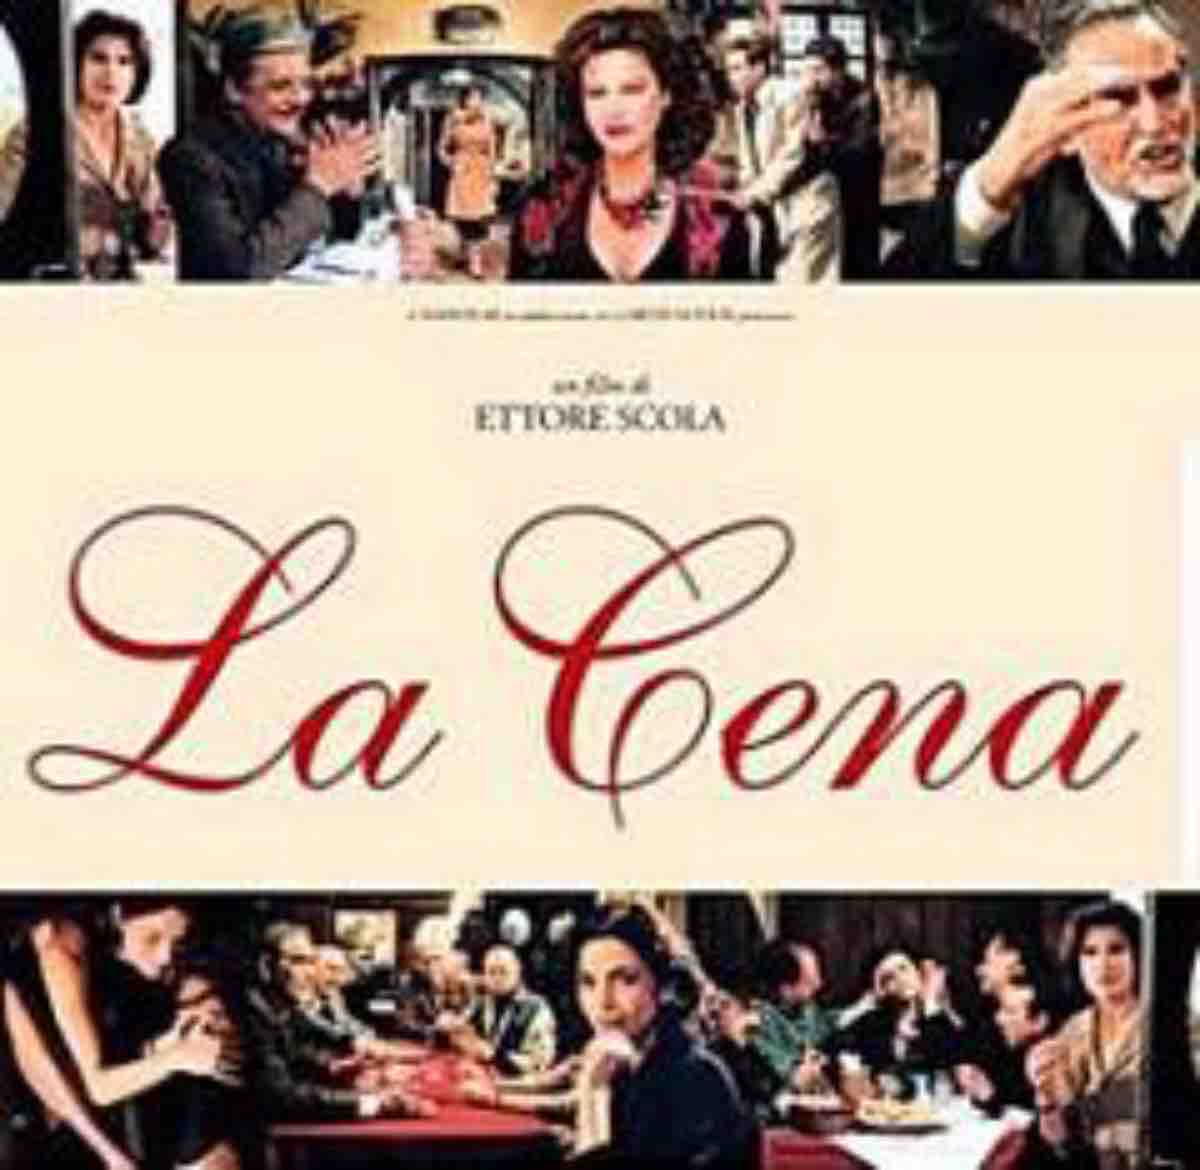 La cena: trama e curiosità sul film con Vittorio Gassman su Canale 5